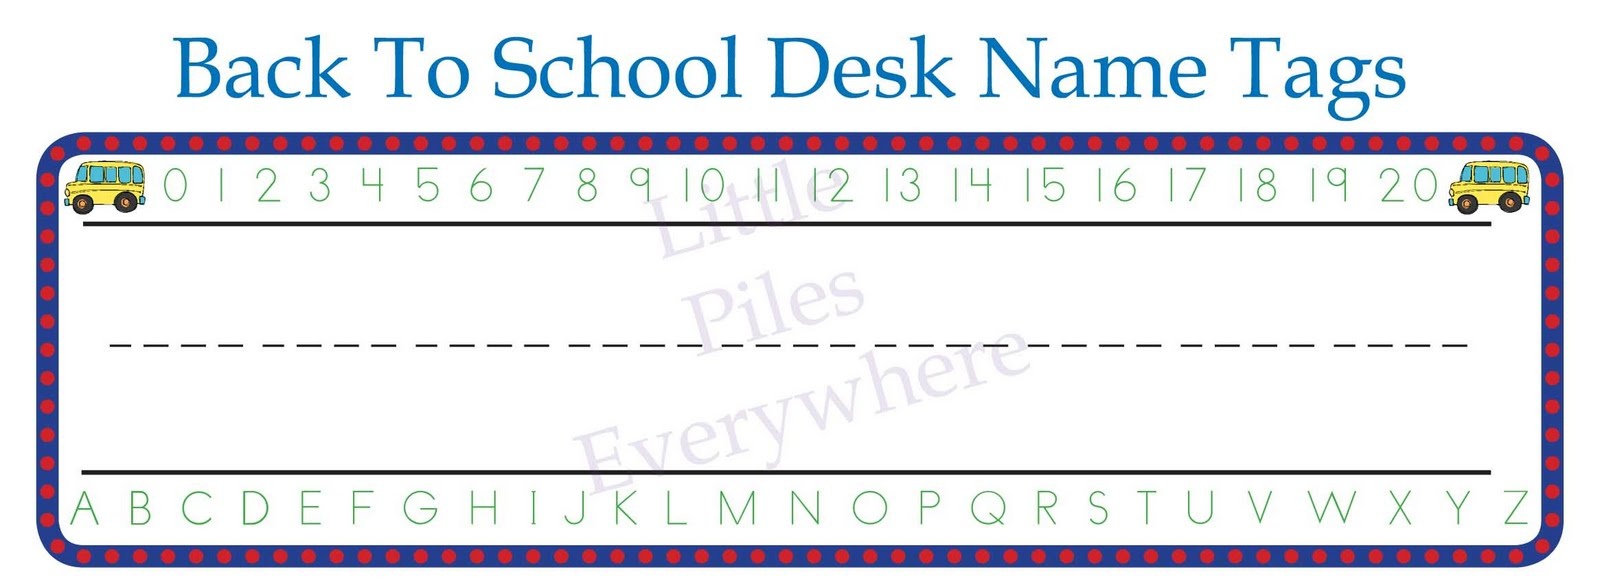 Free Printable Name Tags For Classroom Desks - Hostgarcia - Free Printable Name Tags For School Desks